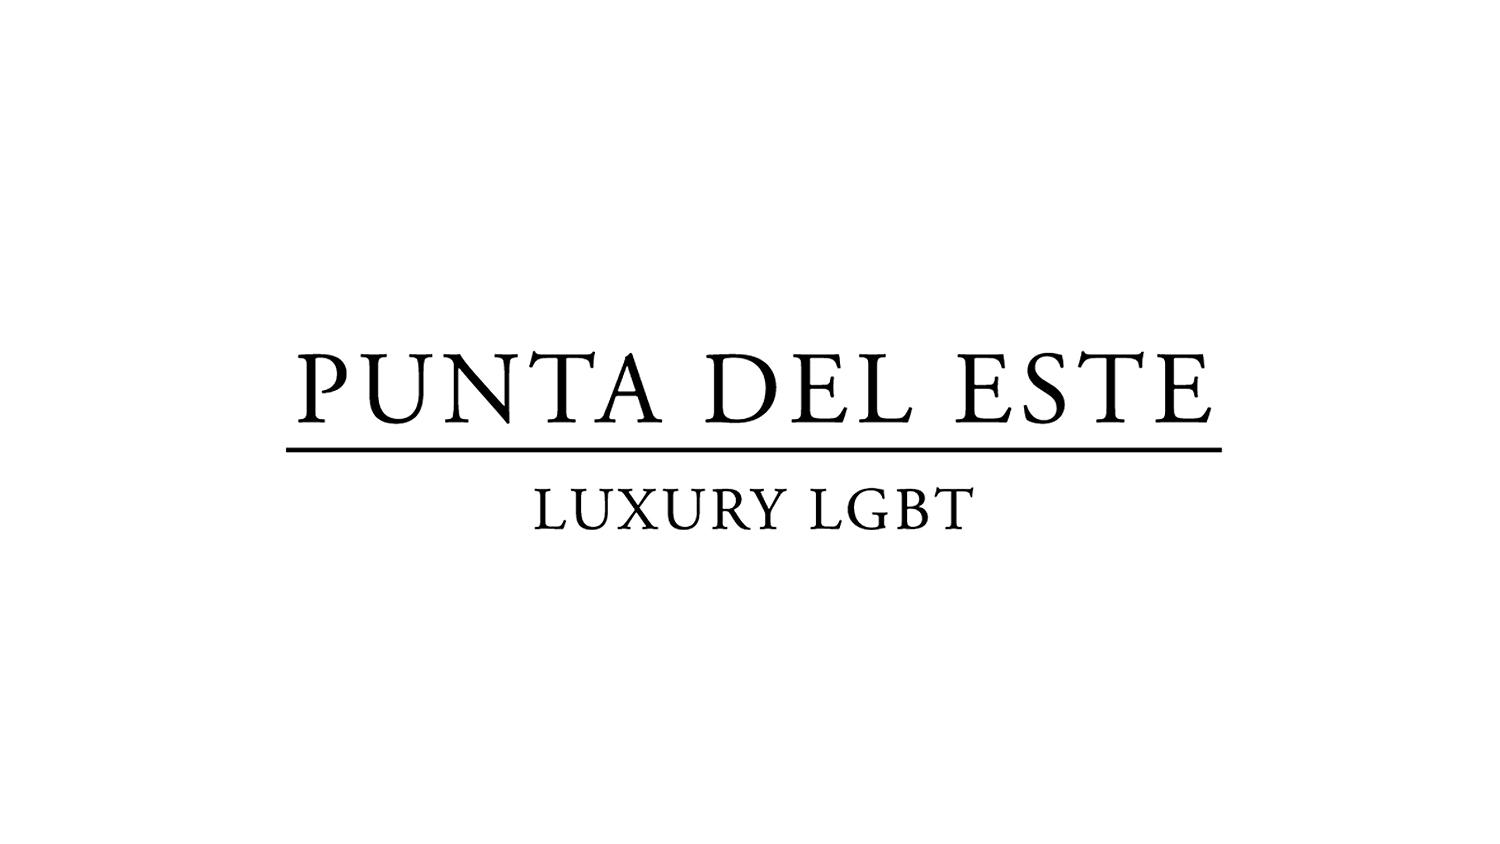 Punta del Este – Luxury LGBT